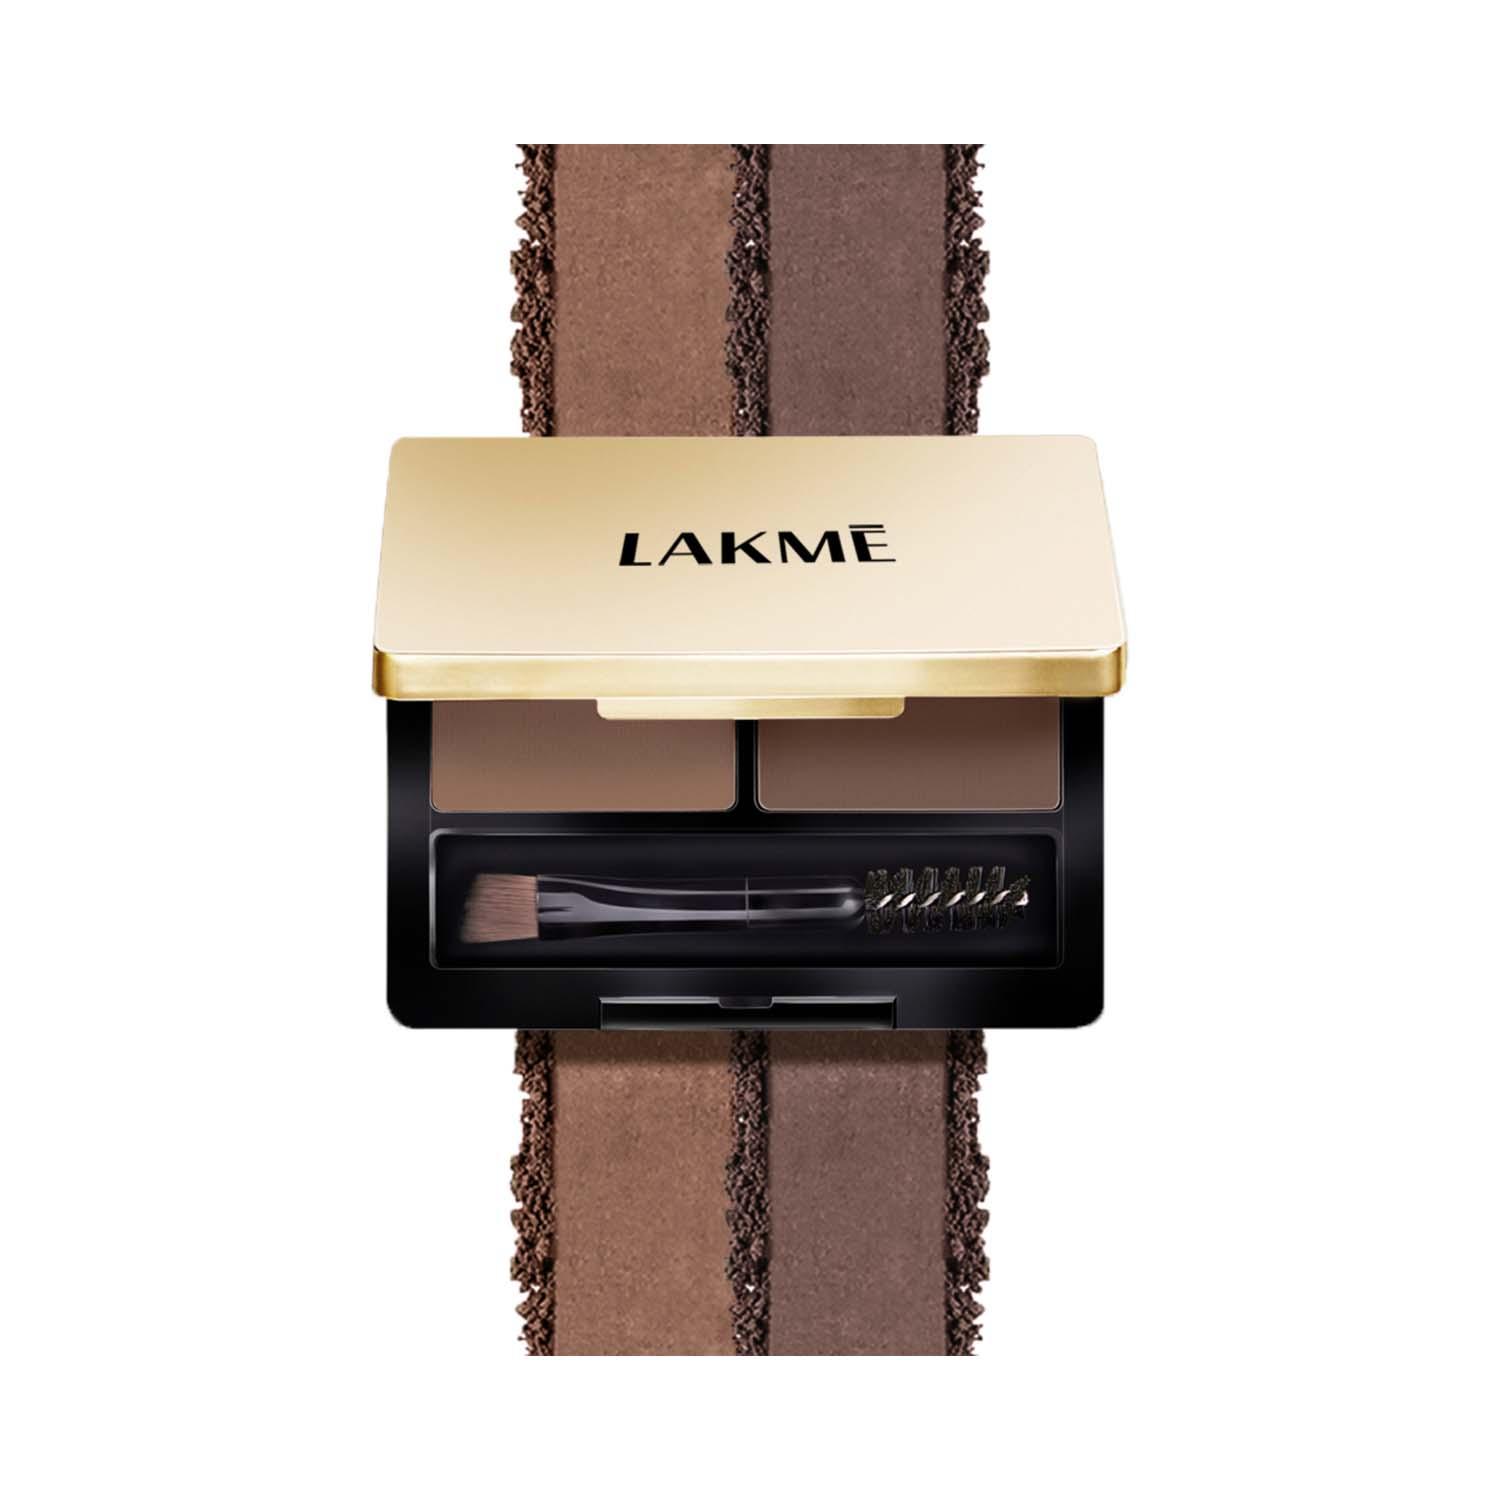 Lakme | Lakme Facelift Brow Sculpt Palette - Brown (4.5g)